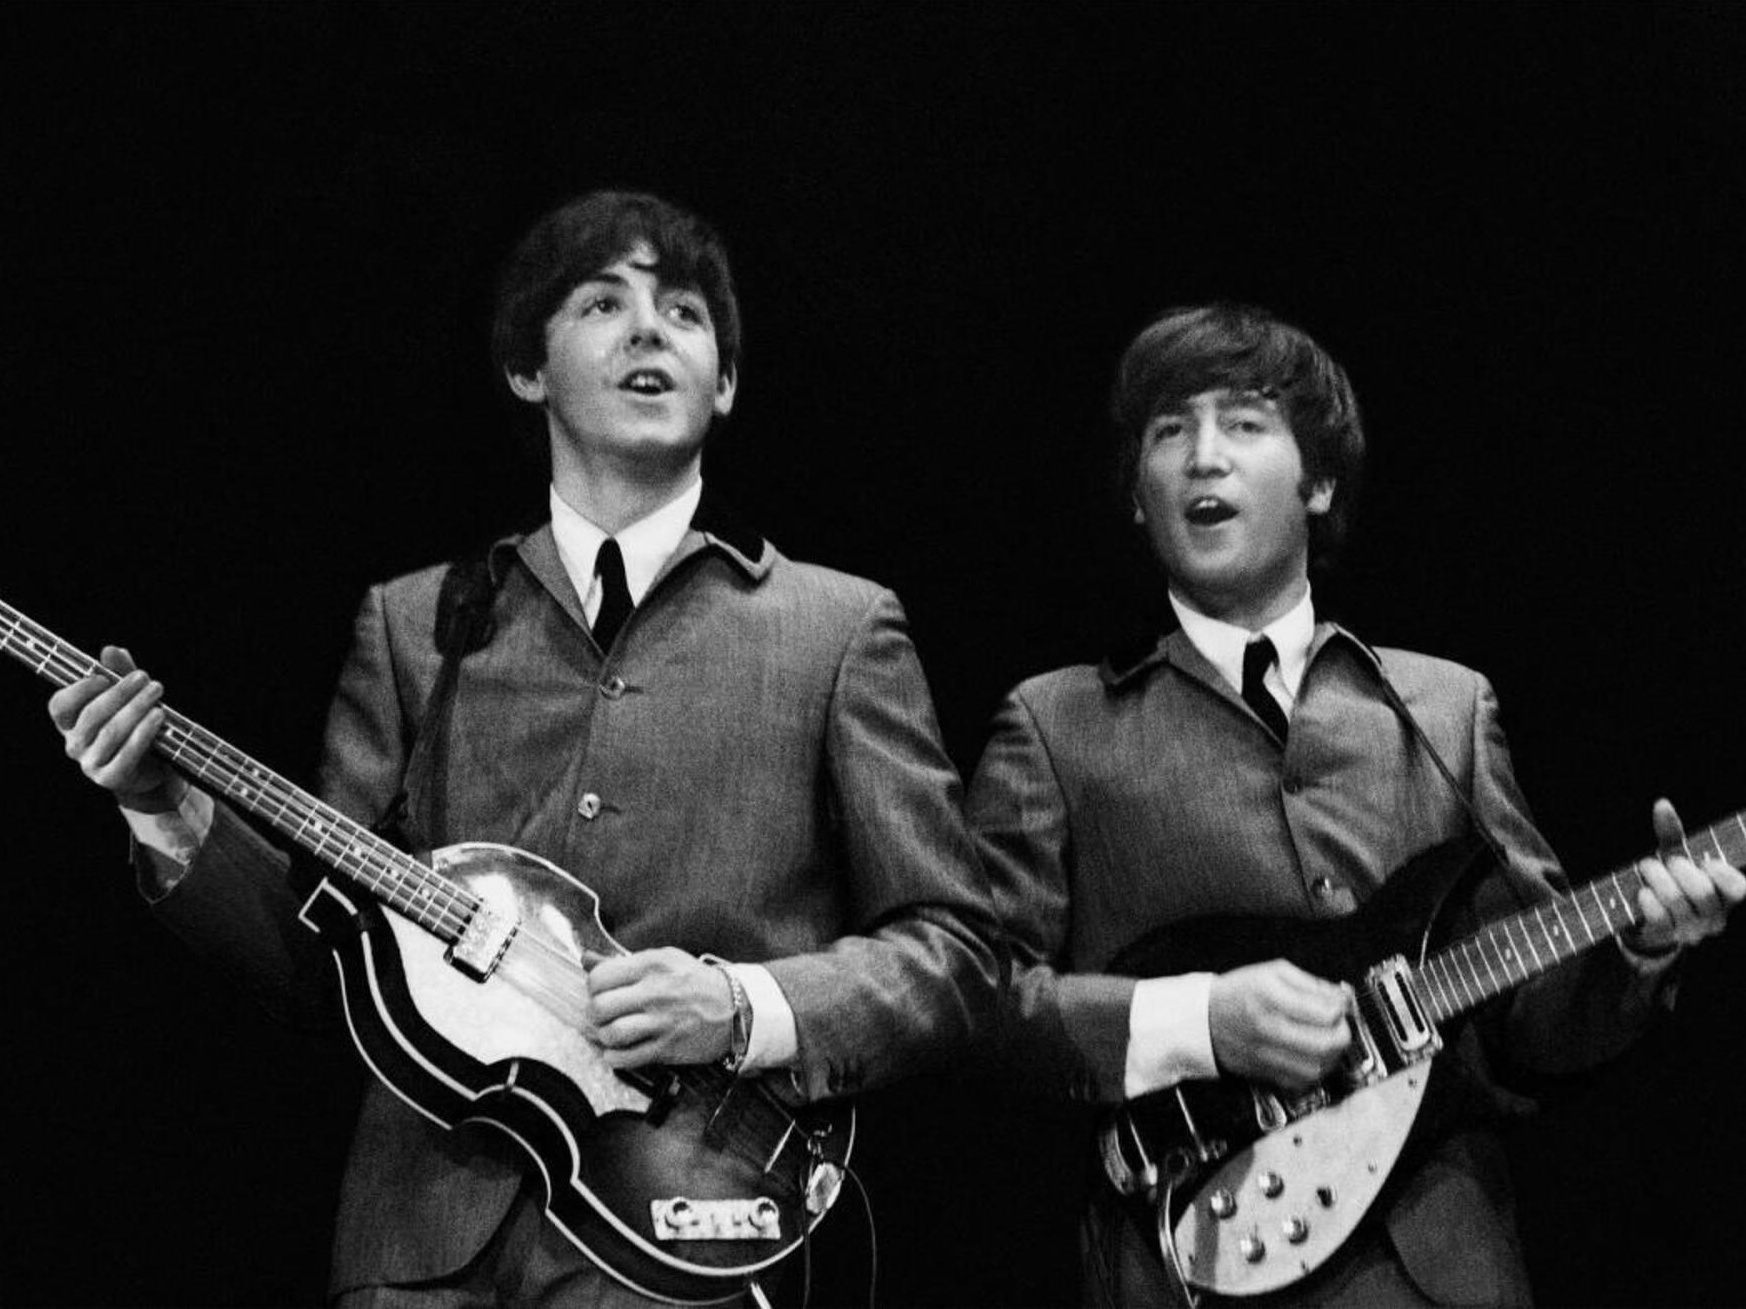 Entrevista de Paul McCartney causou separação dos Beatles há exatos 50 anos,  afirma jornal - Monet